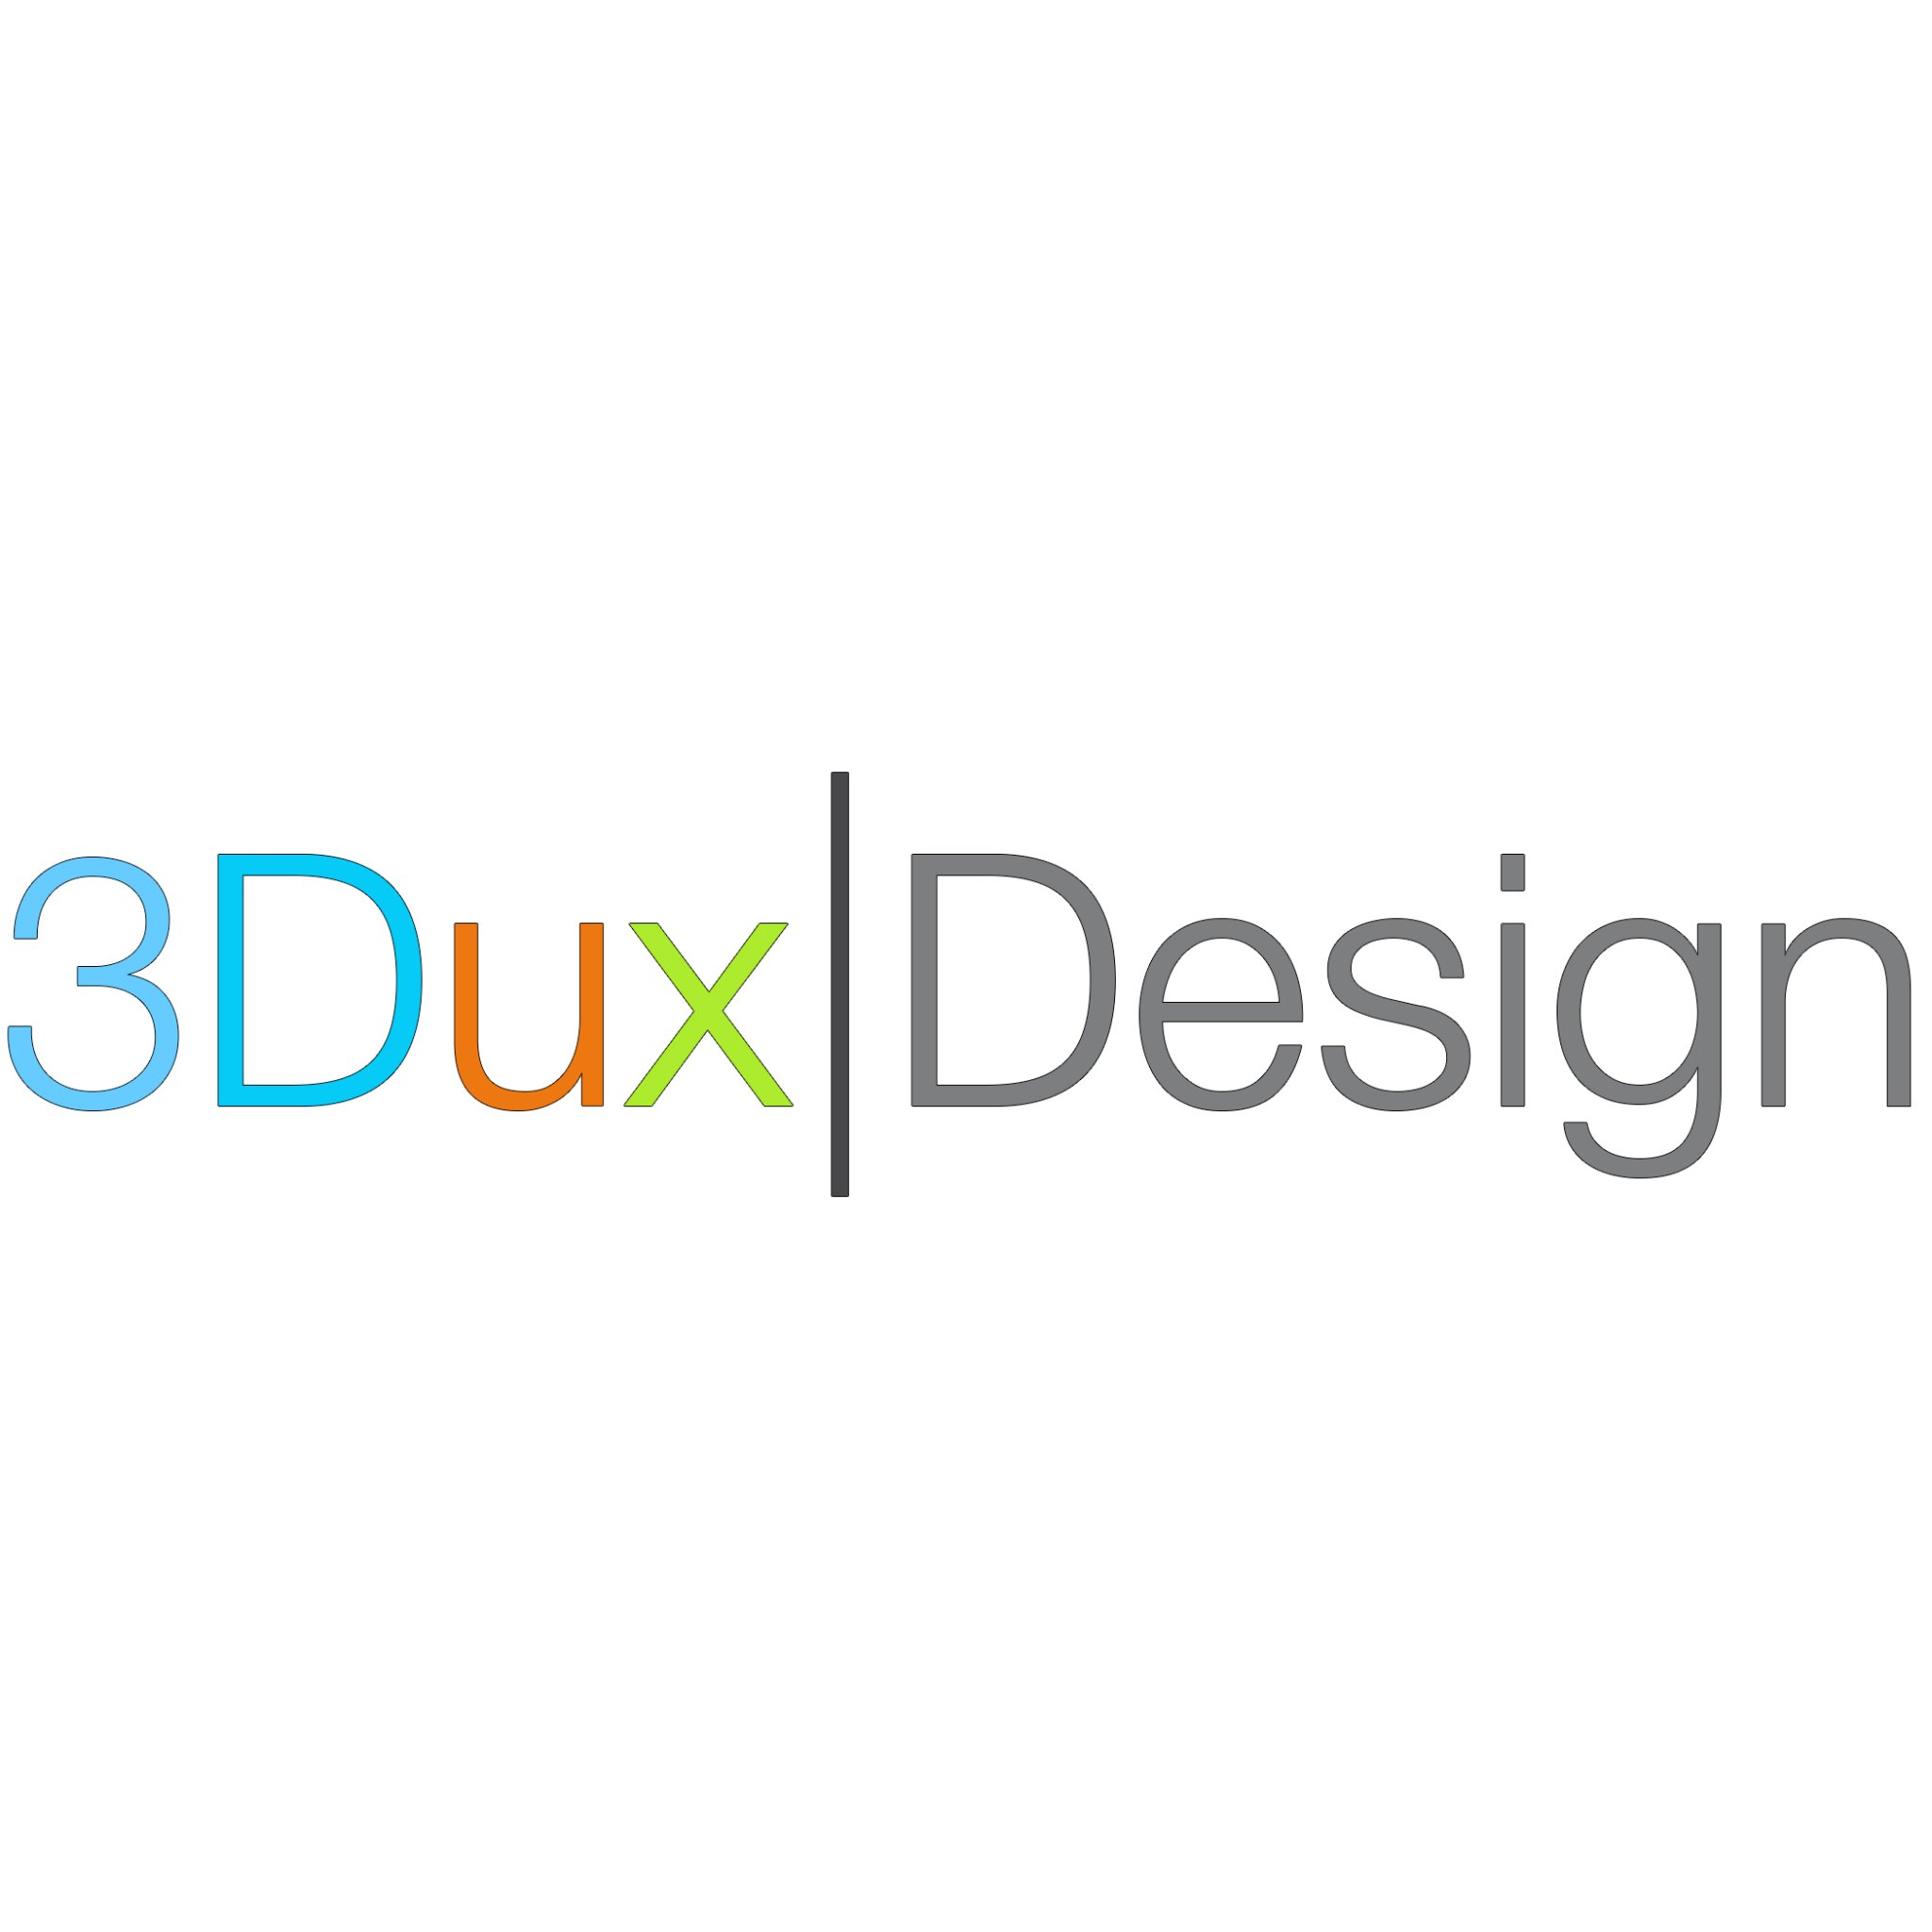 3Duxdesign